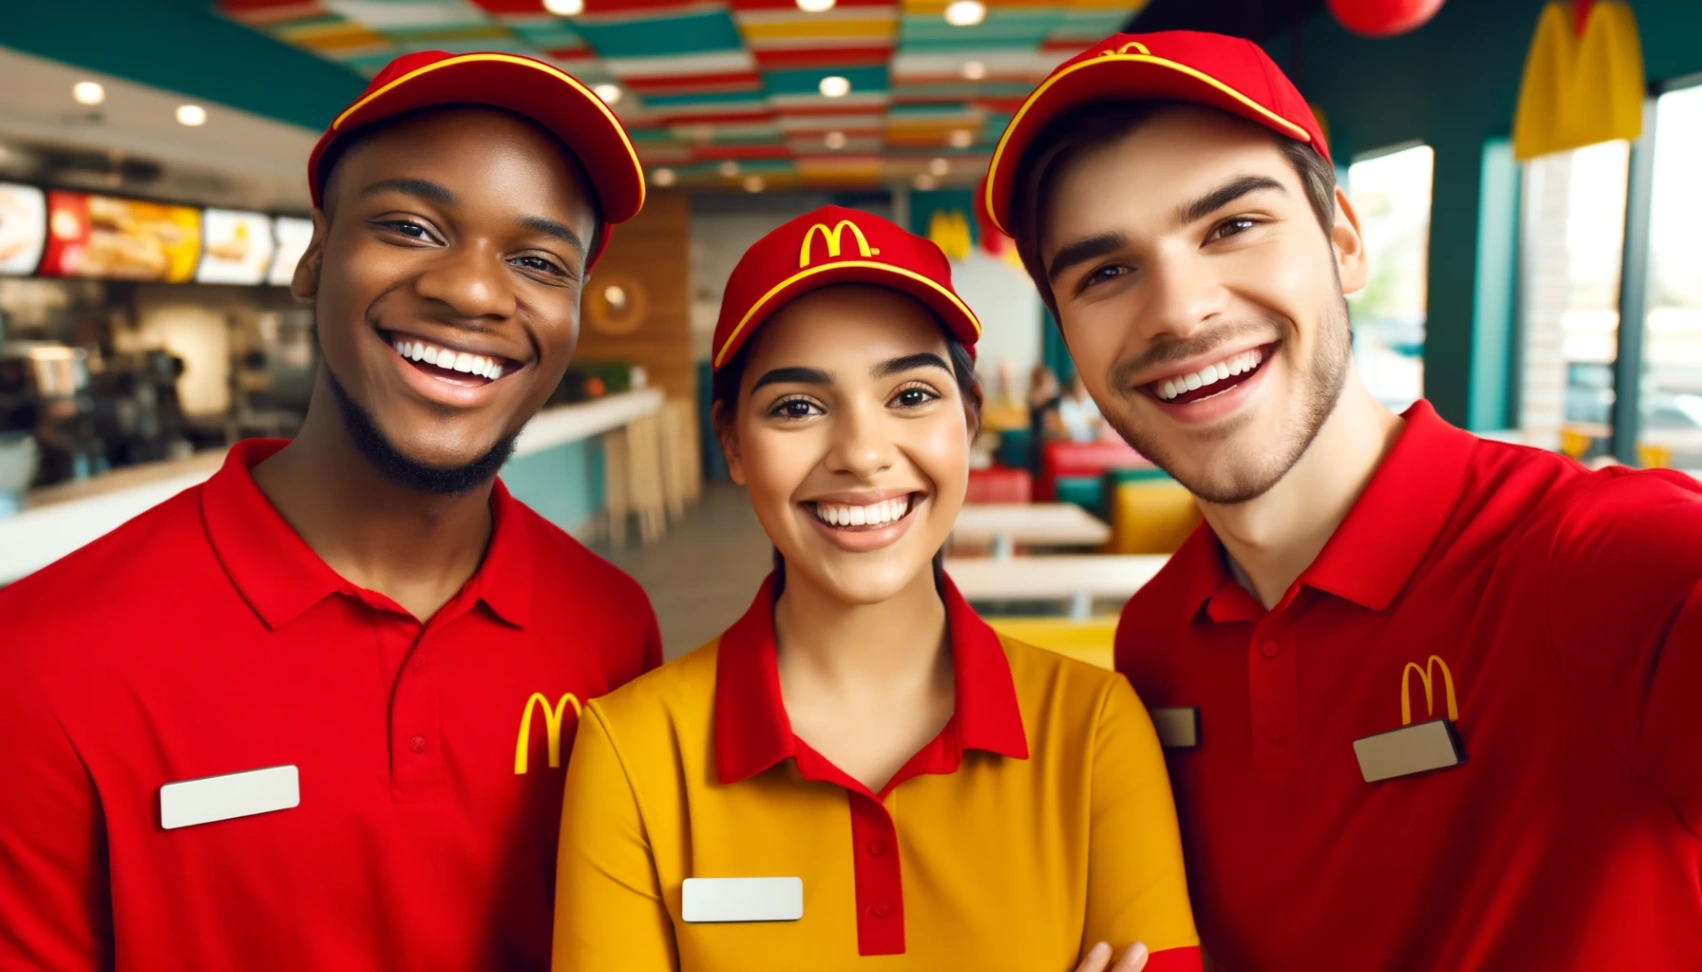 McDonald's jobbsøknad: Din vei til spennende muligheter